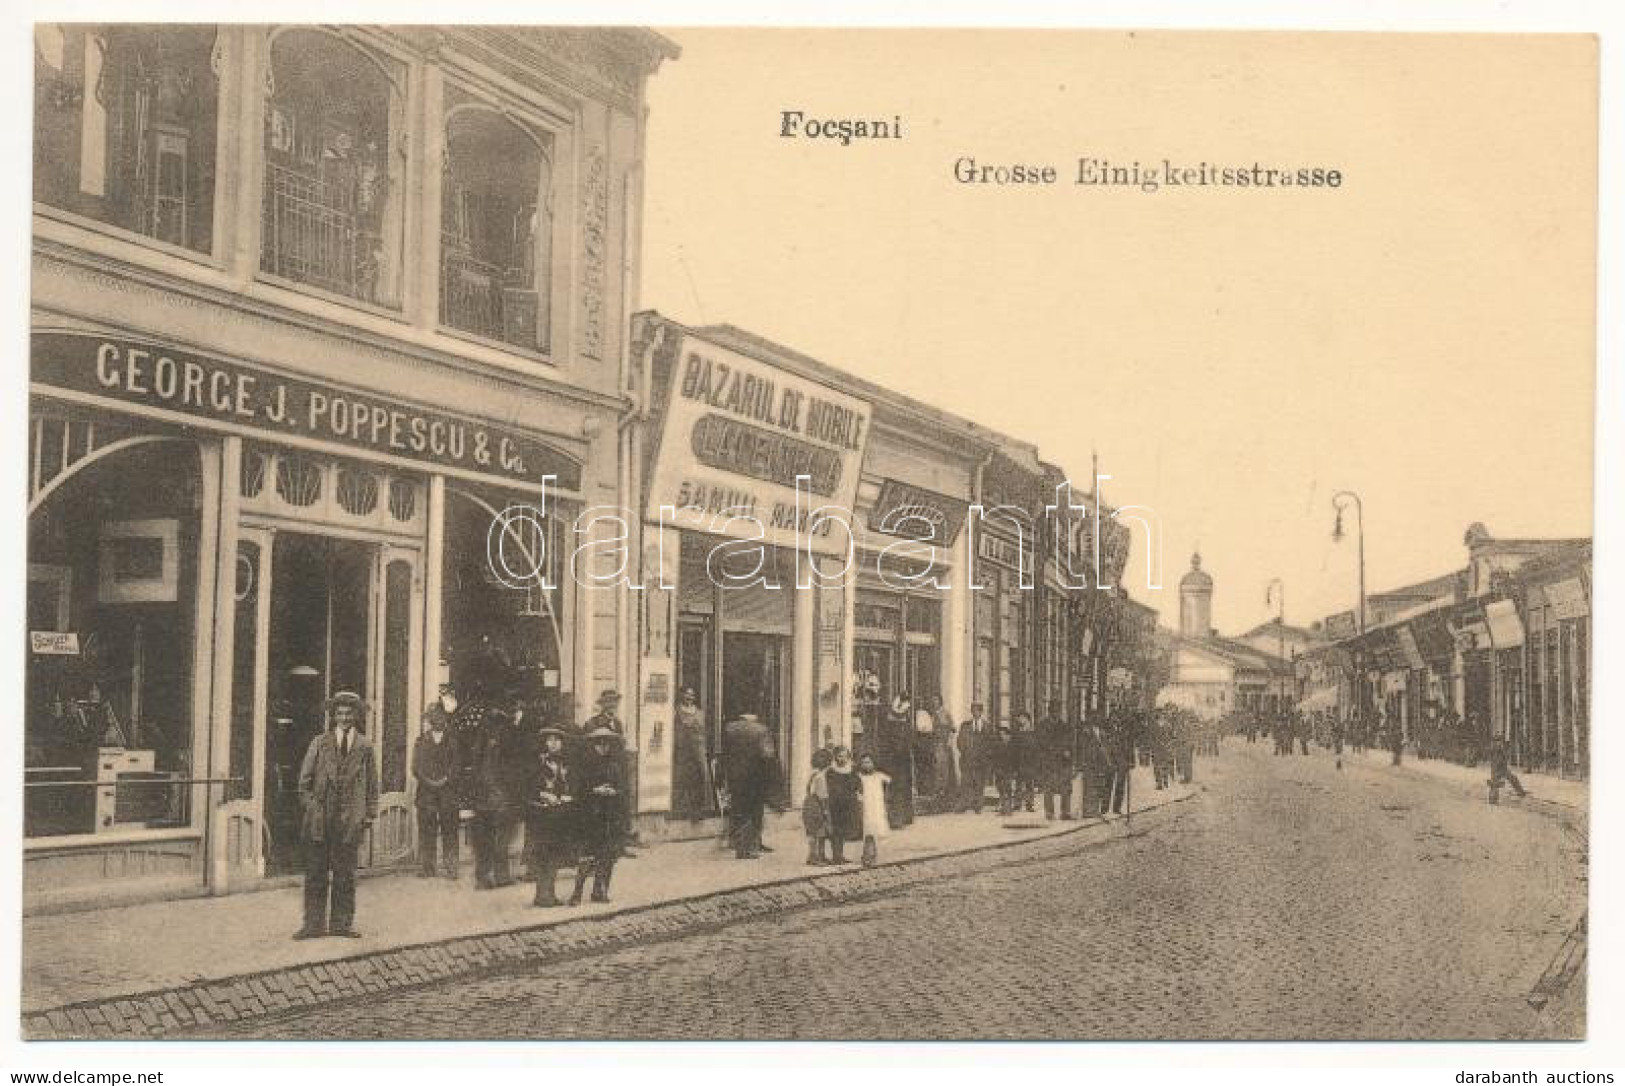 ** T1 Focsani, Foksány (Moldavia); Grosse Einigkeitstrasse / Bazarul De Mobile La Centrala Samuil Marcu, George J. Poppe - Non Classés